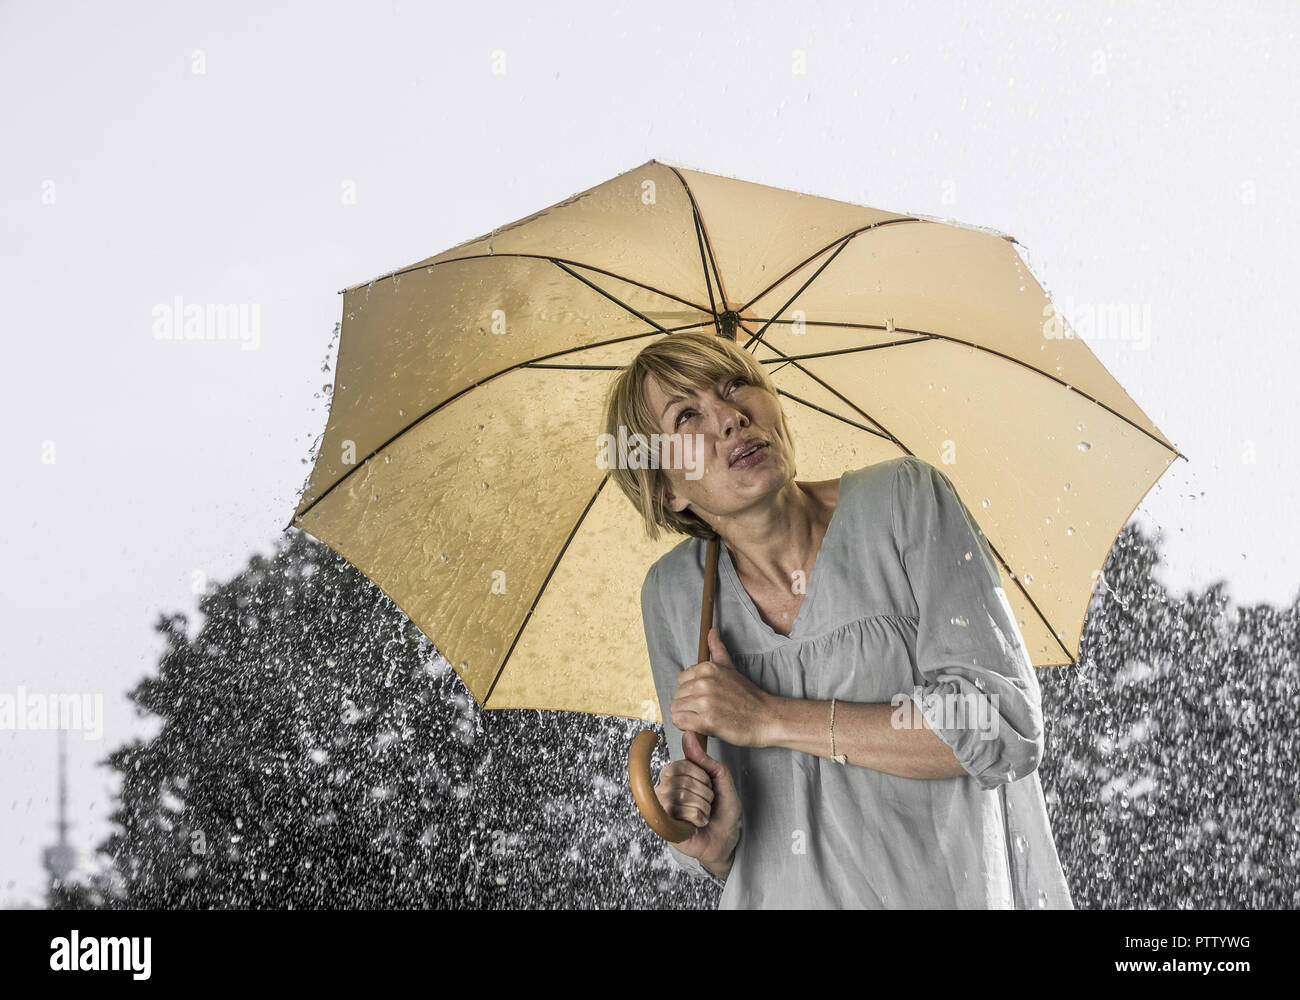 Limited Time Deals New Deals Everyday Regen Regenschirm Off 78 Buy